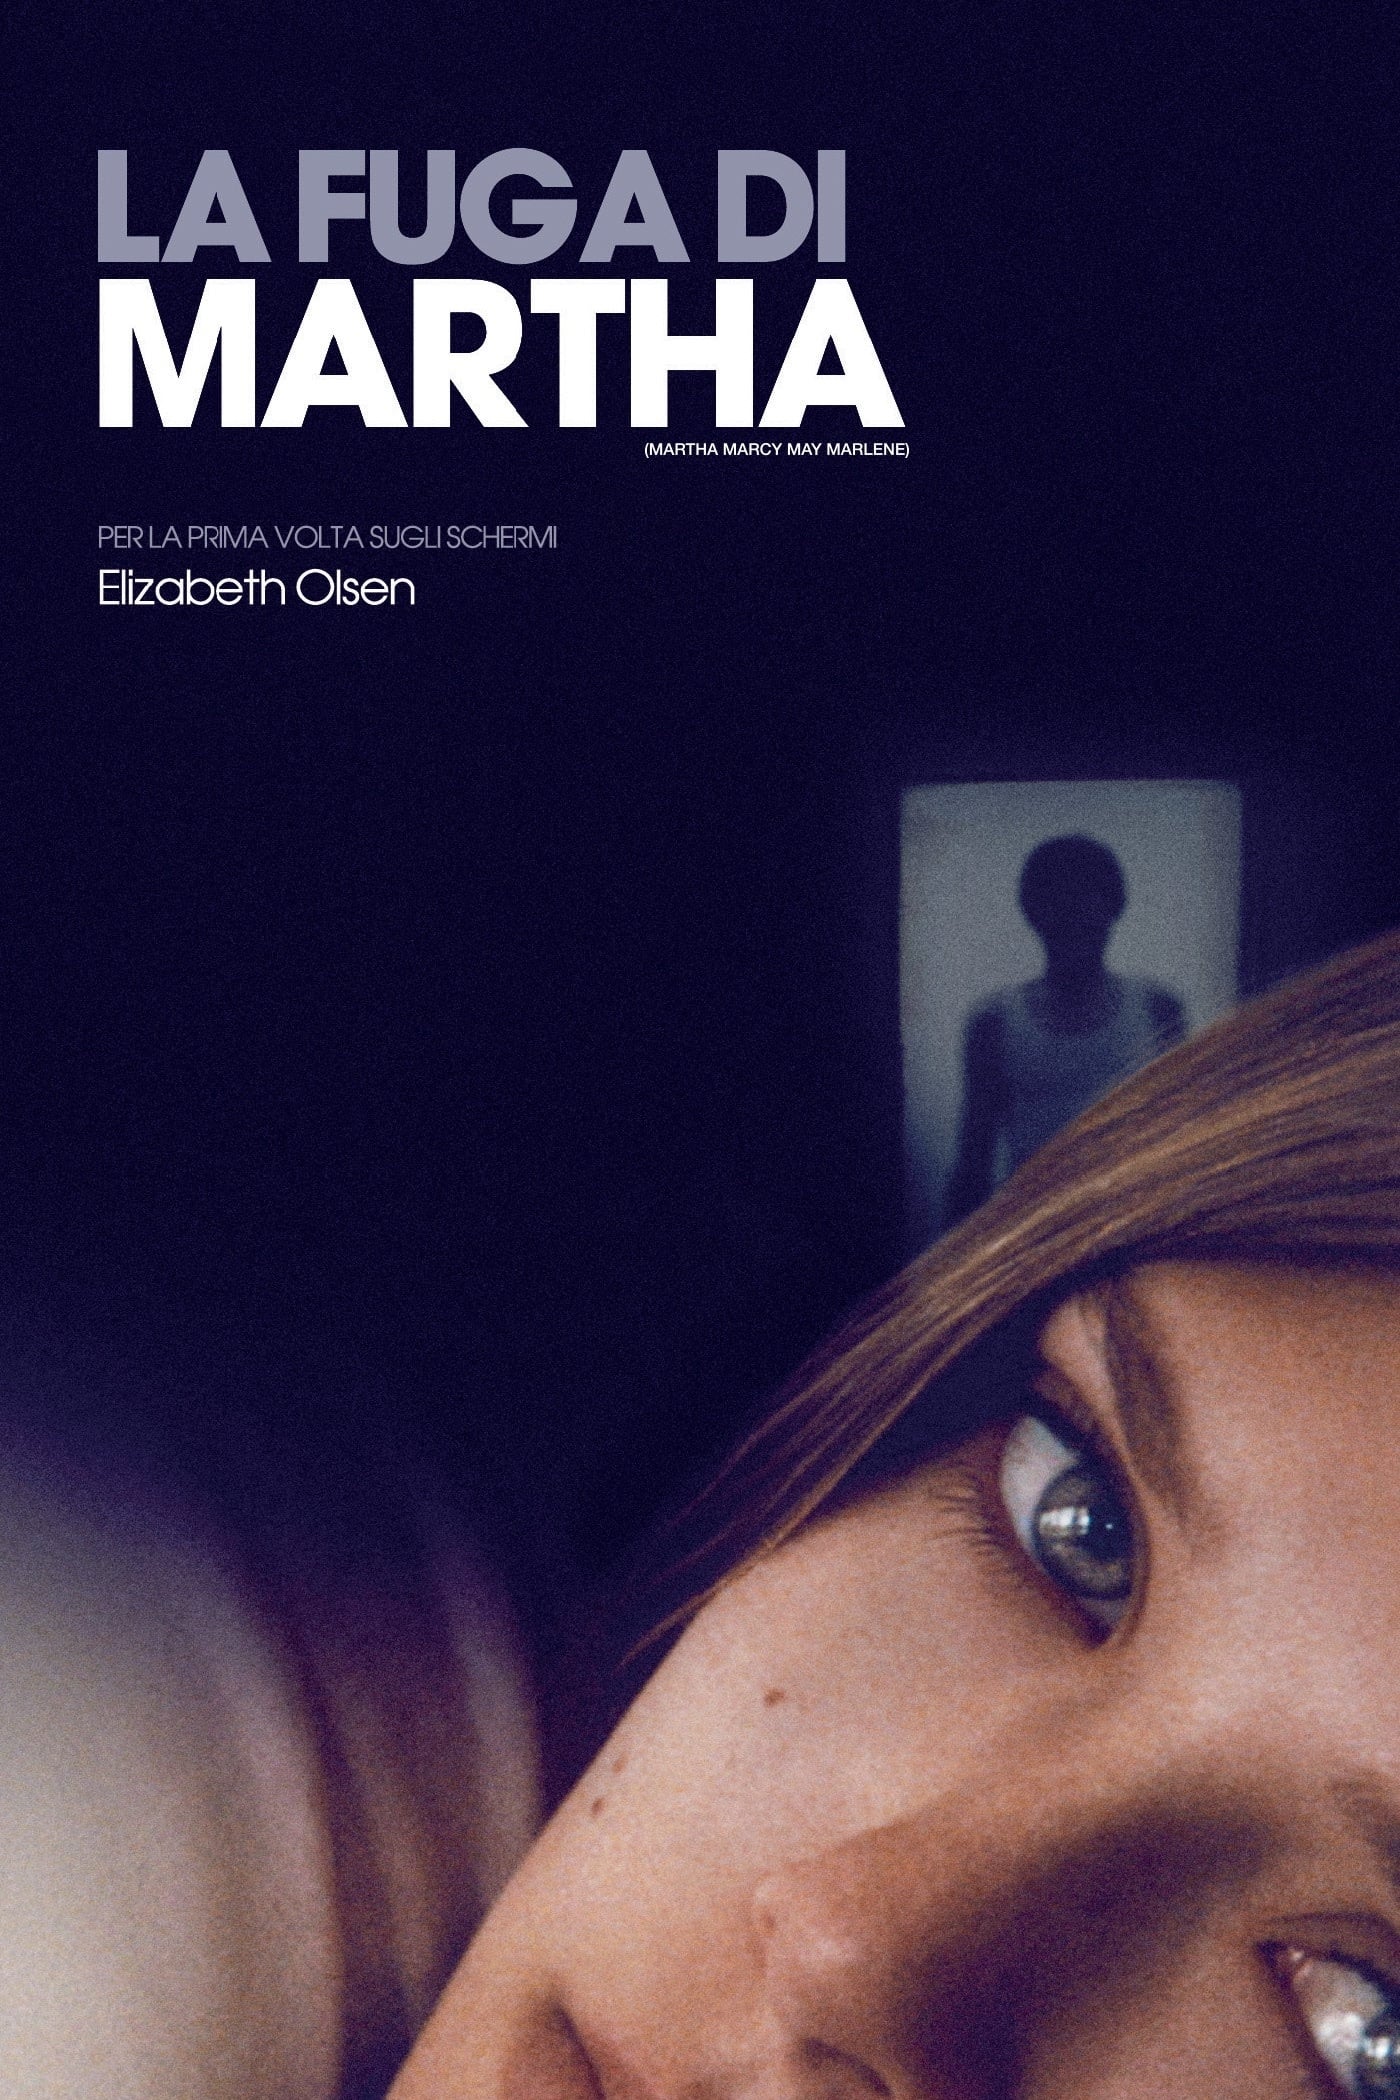 La fuga di Martha [HD] (2012)